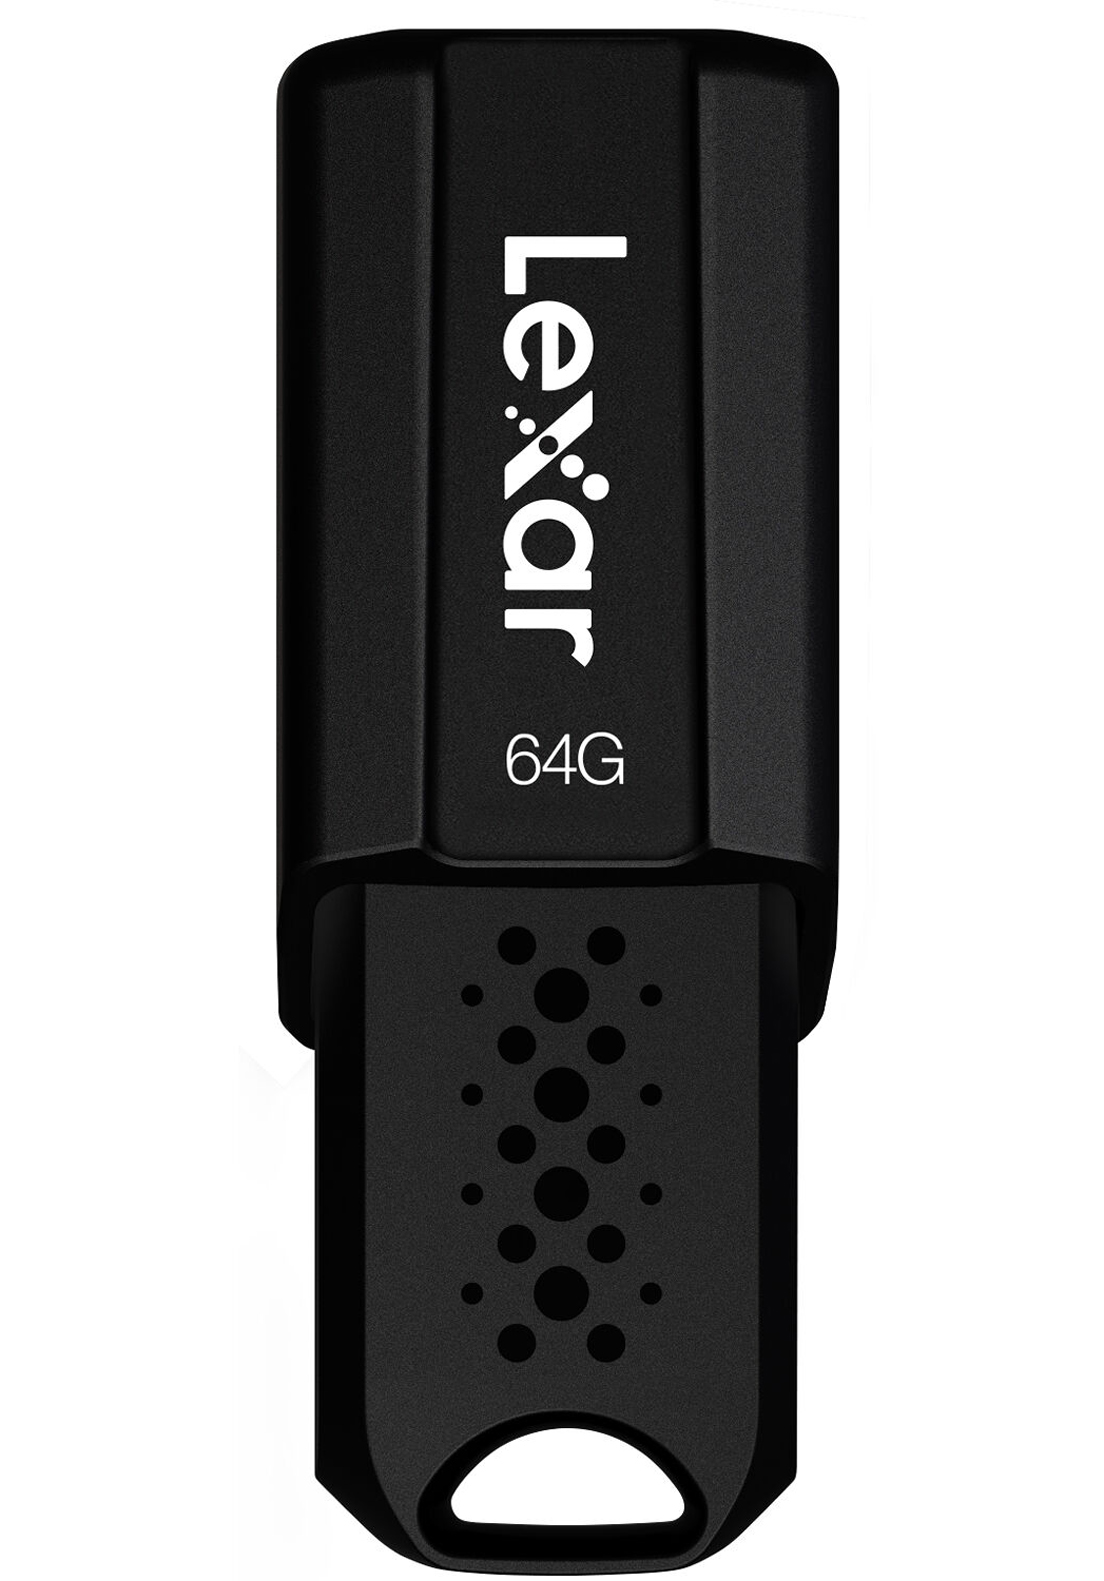 Lexar S80 Jumpdrive USB 3.1 — Richmond Camera Shop